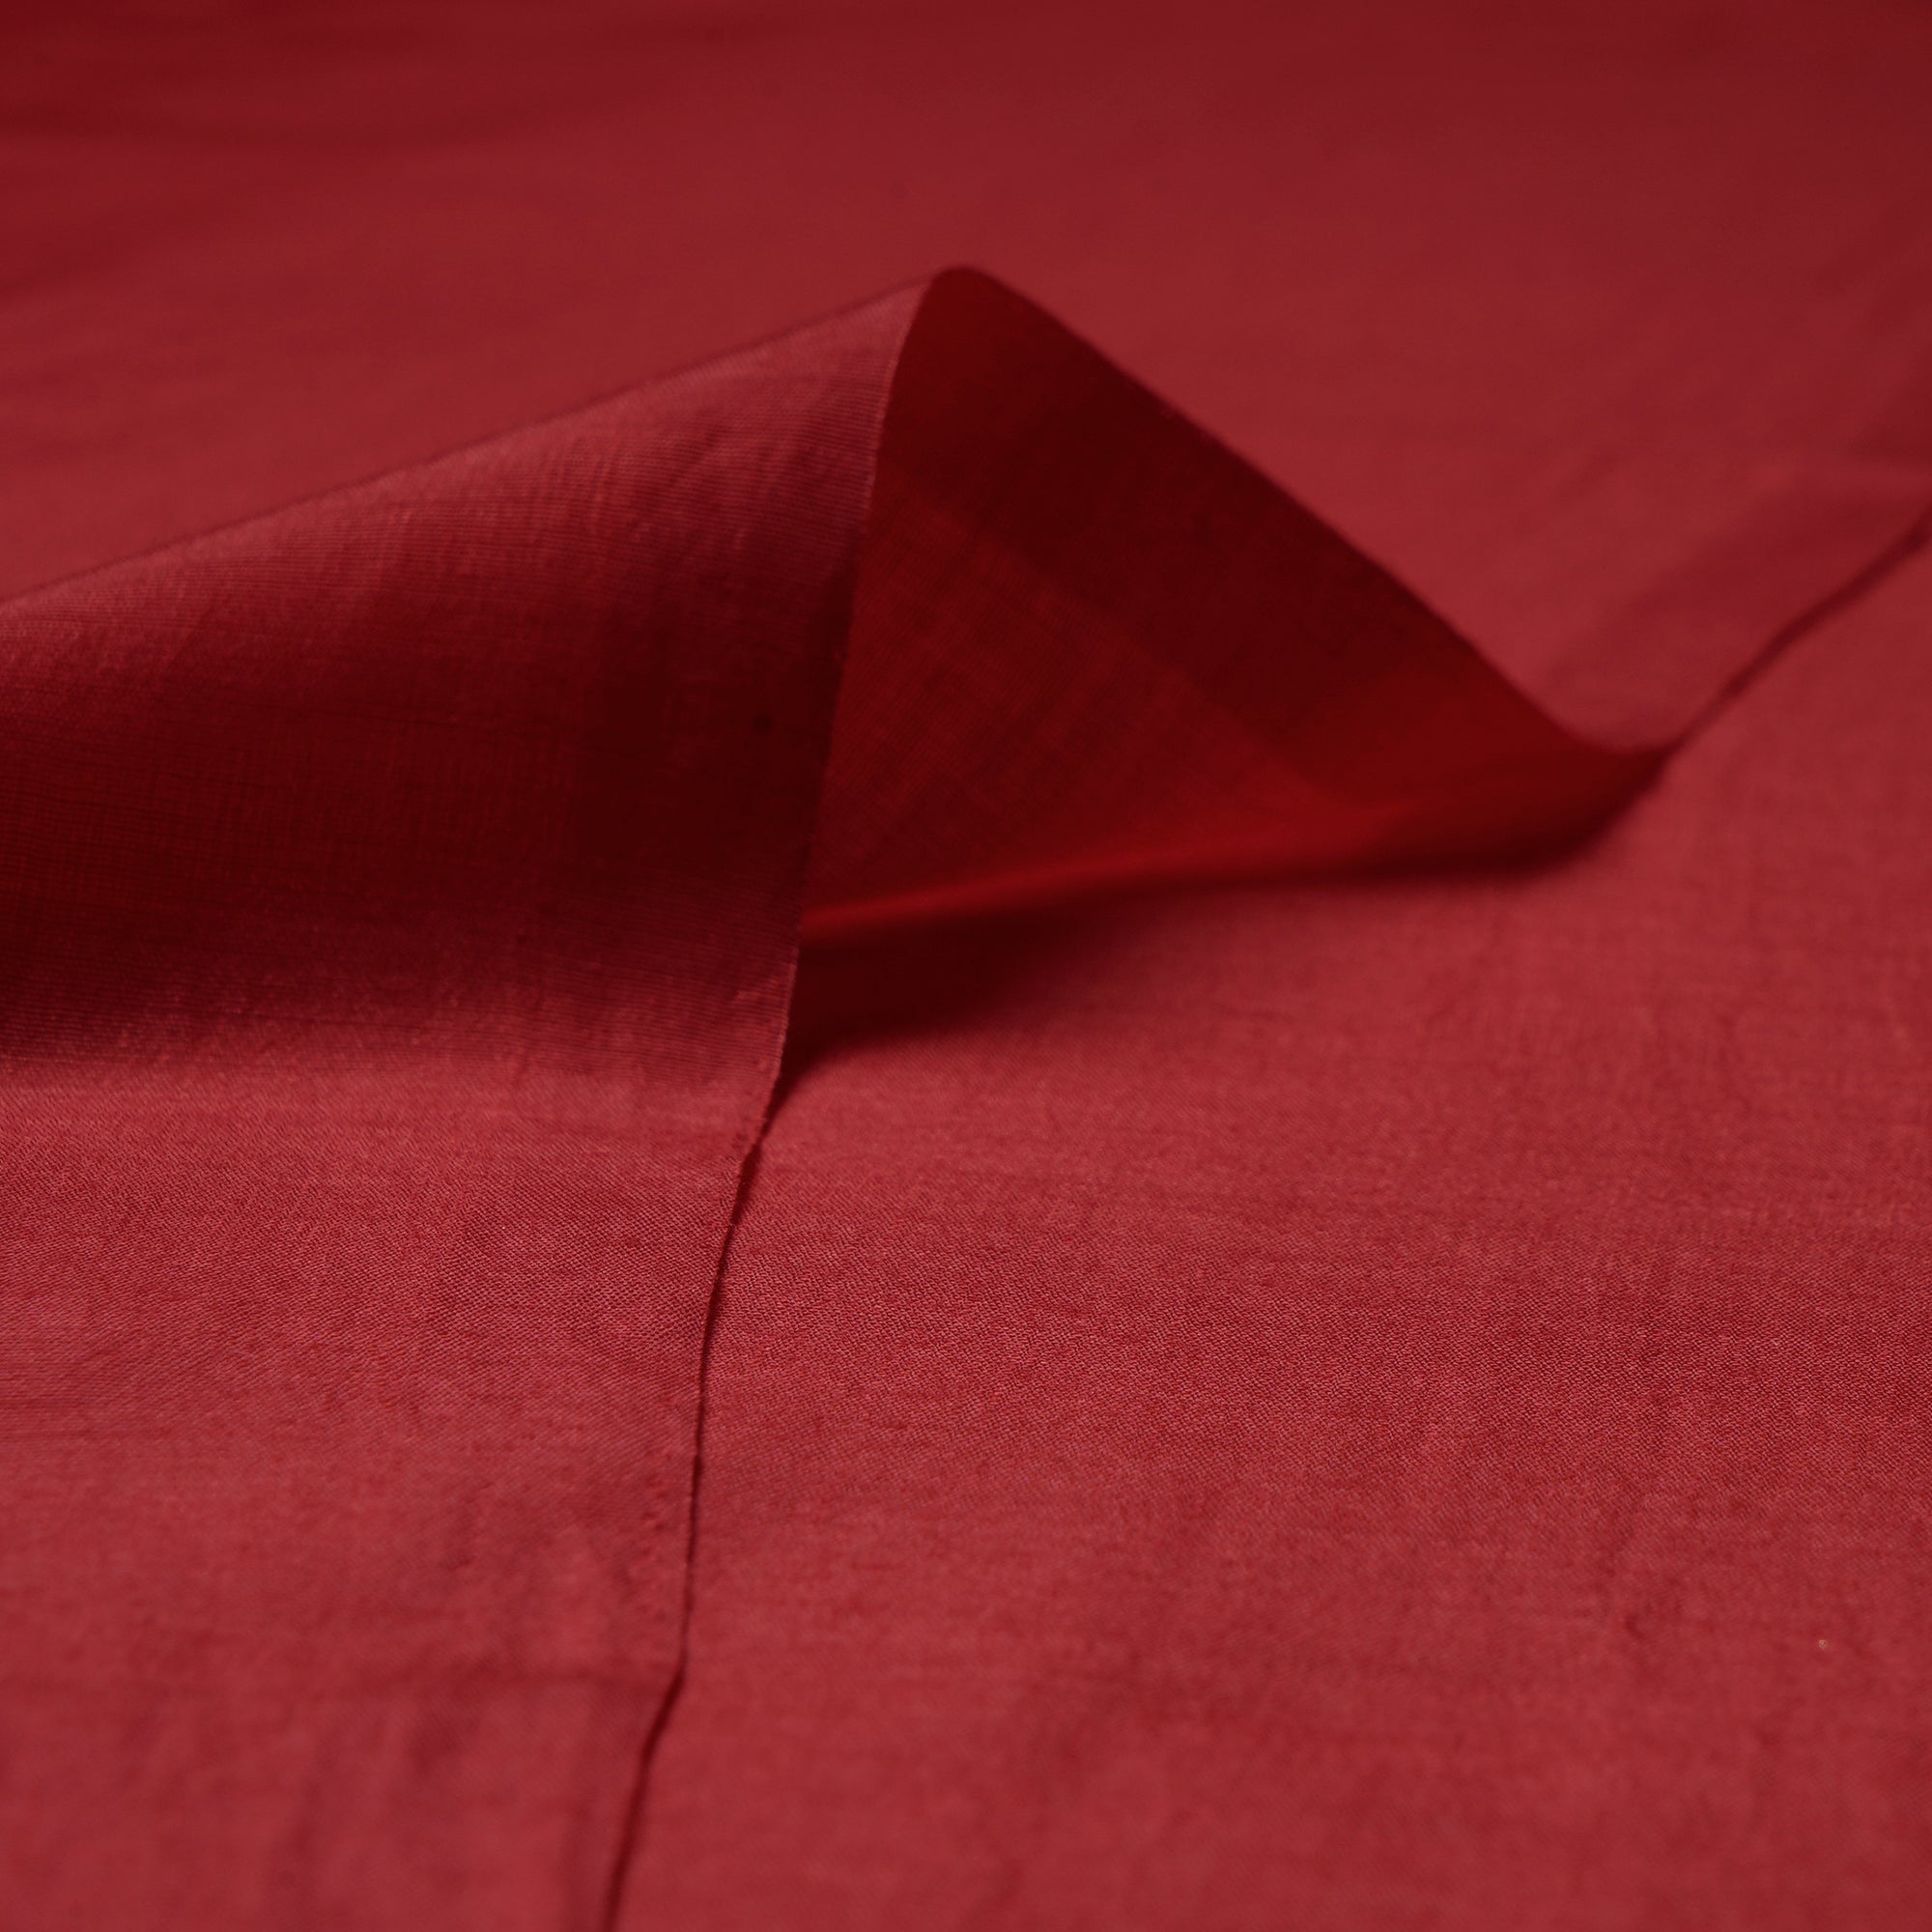 Red Plain Premium Orra Satin Fabric